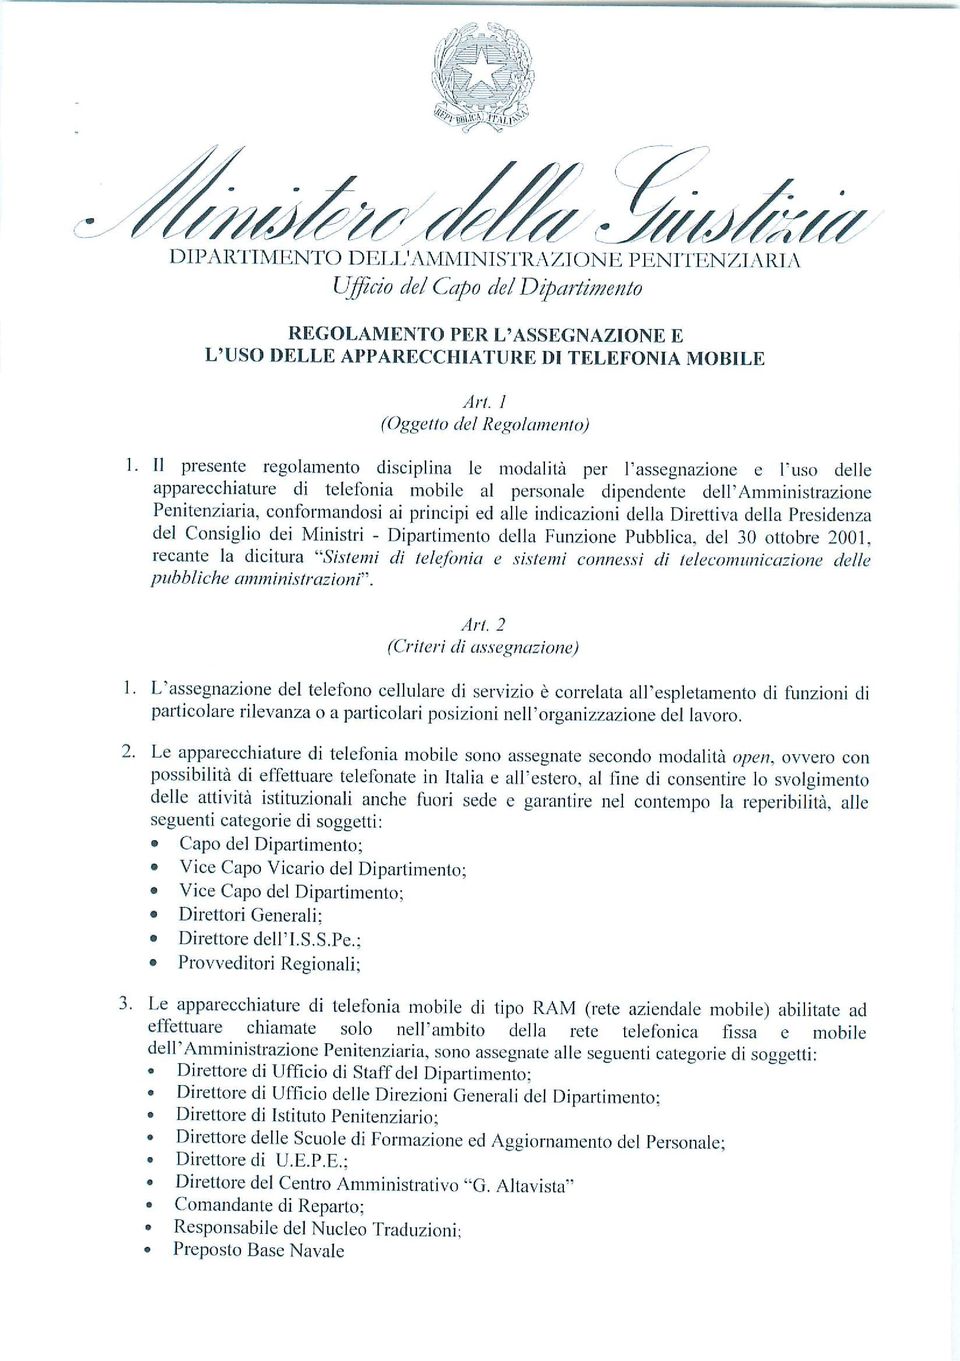 principi ed alle indicazioni della Direttiva della Presidenza del Consiglio dei Ministri - Dipartimento della Funzione Pubblica, del 30 ottobre 2001.